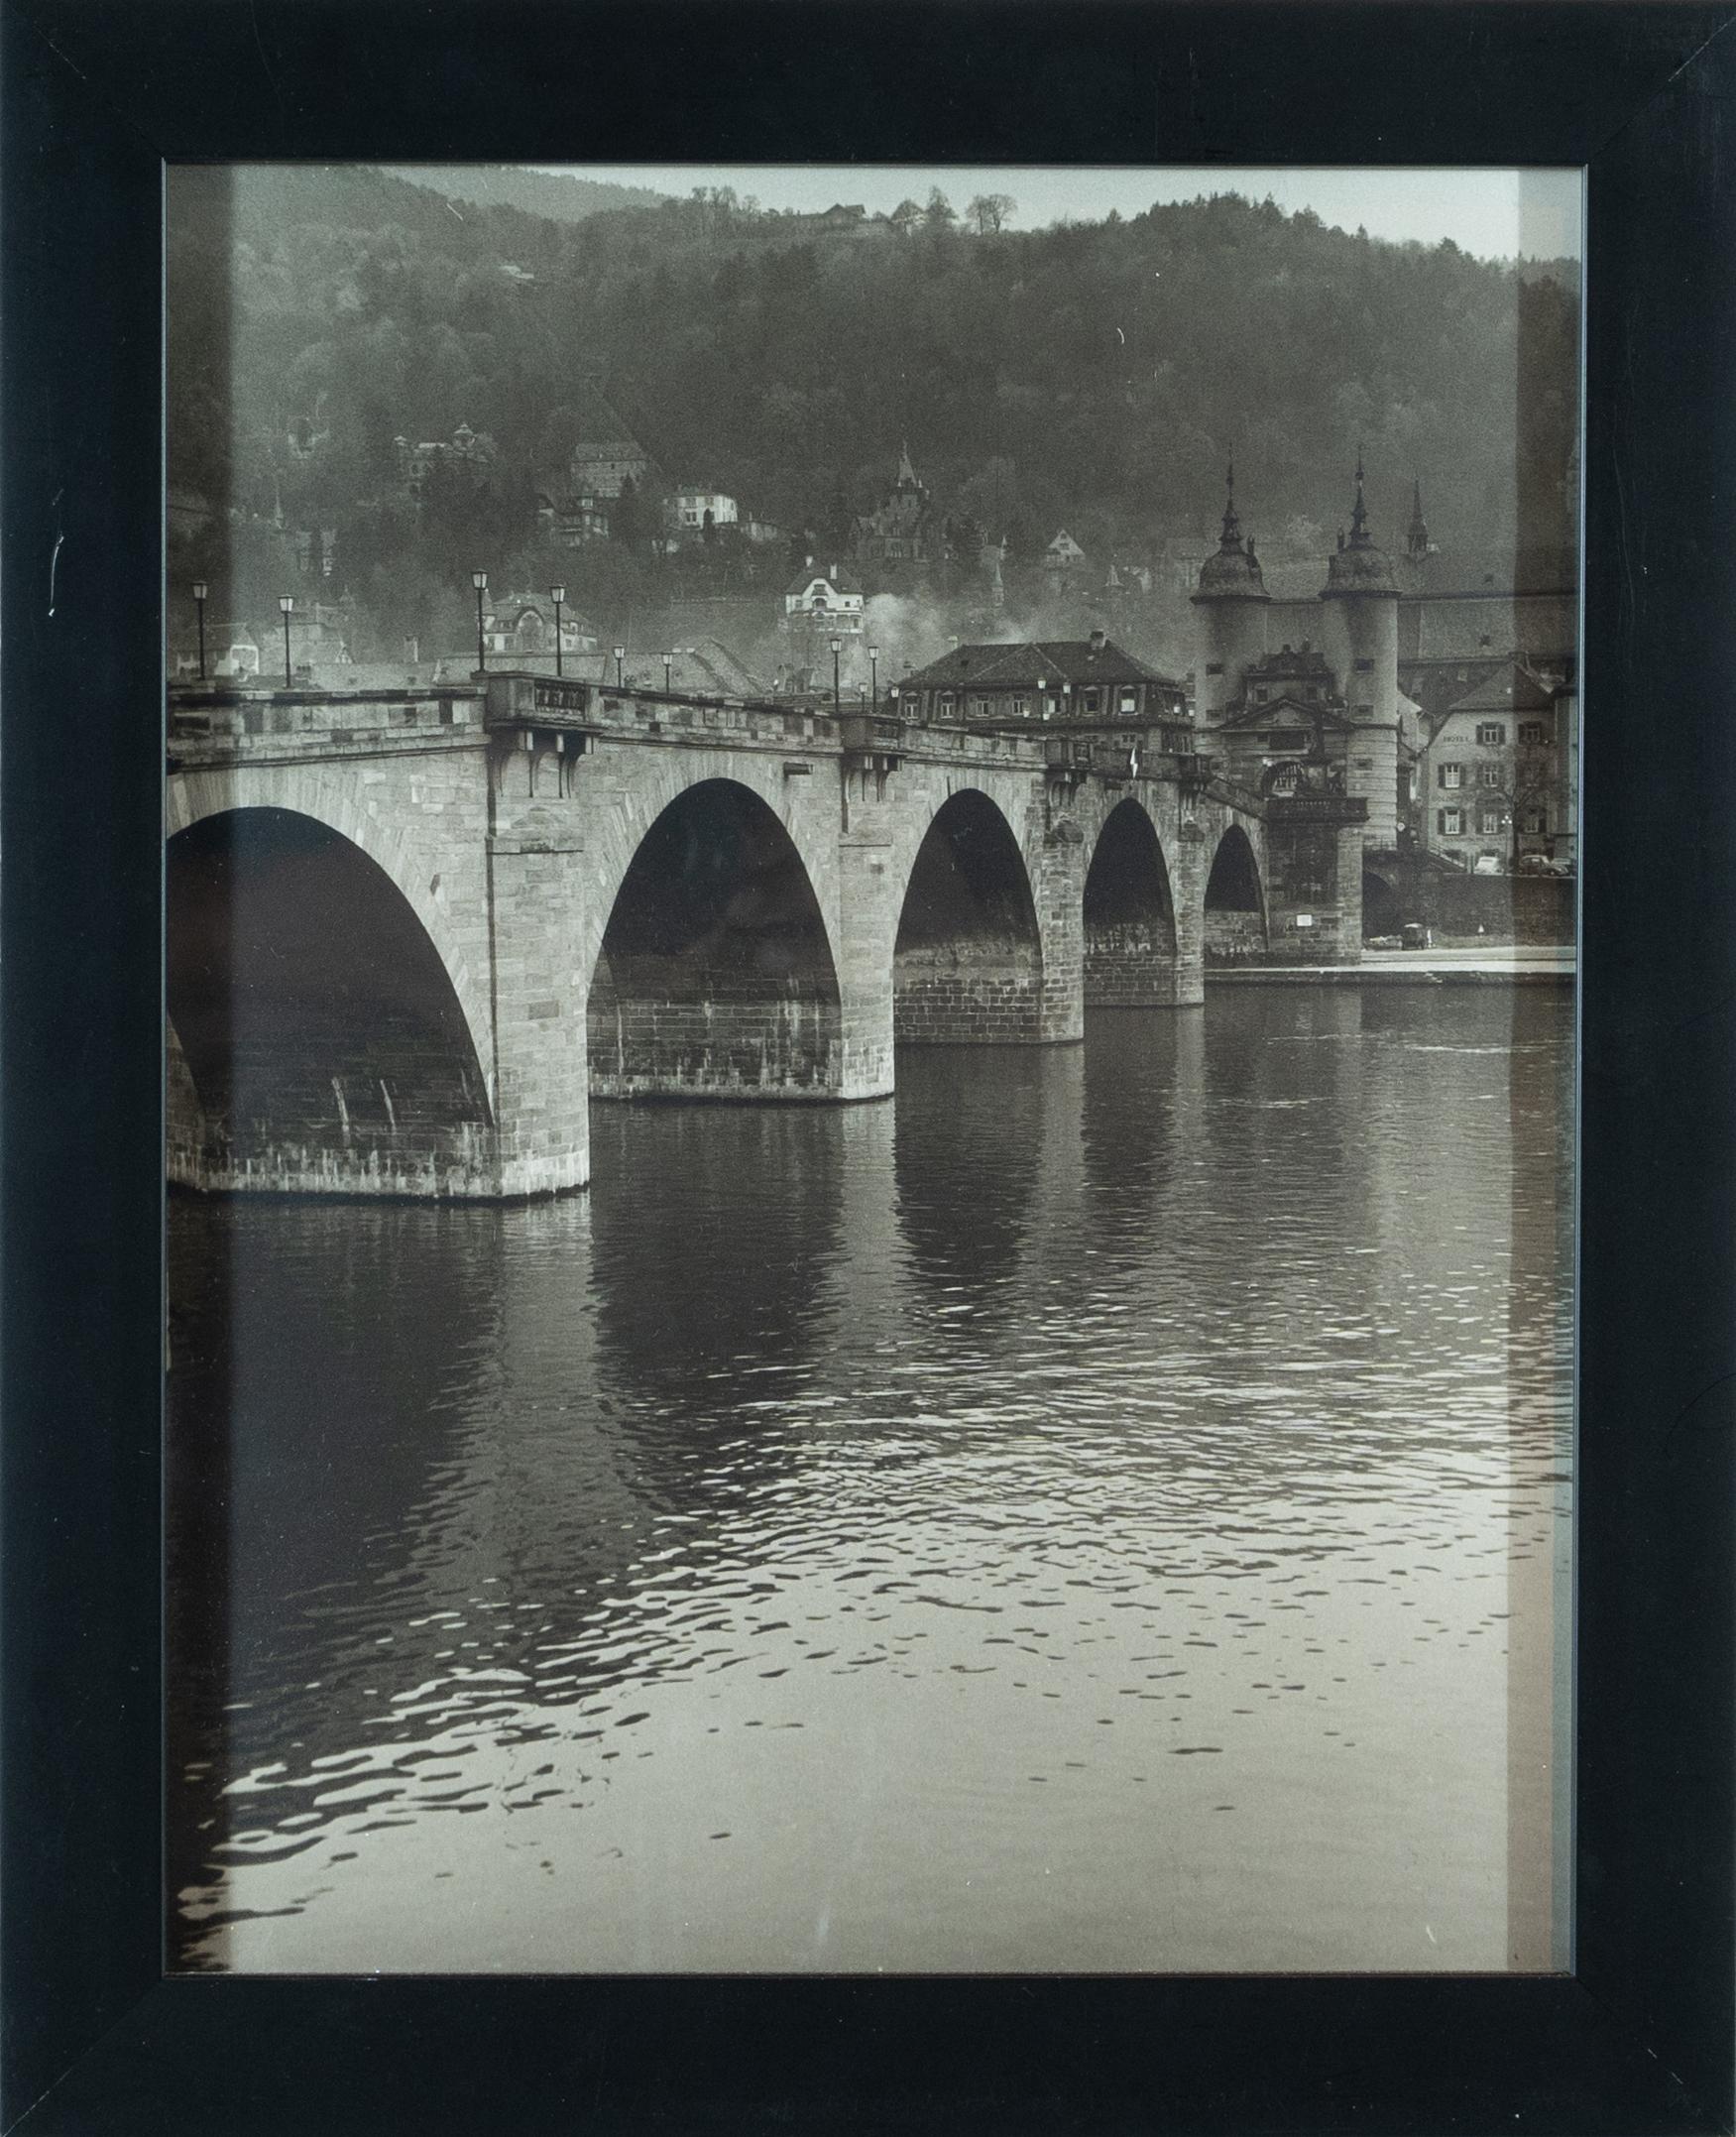 Ce tirage photographique noir et blanc encadré de 20" x 16" représente un pont européen, une rivière et un paysage. Le pont disparaît dans la partie gauche de la toile et mène à ce qui semble être un grand bâtiment sur la partie droite de l'œuvre,